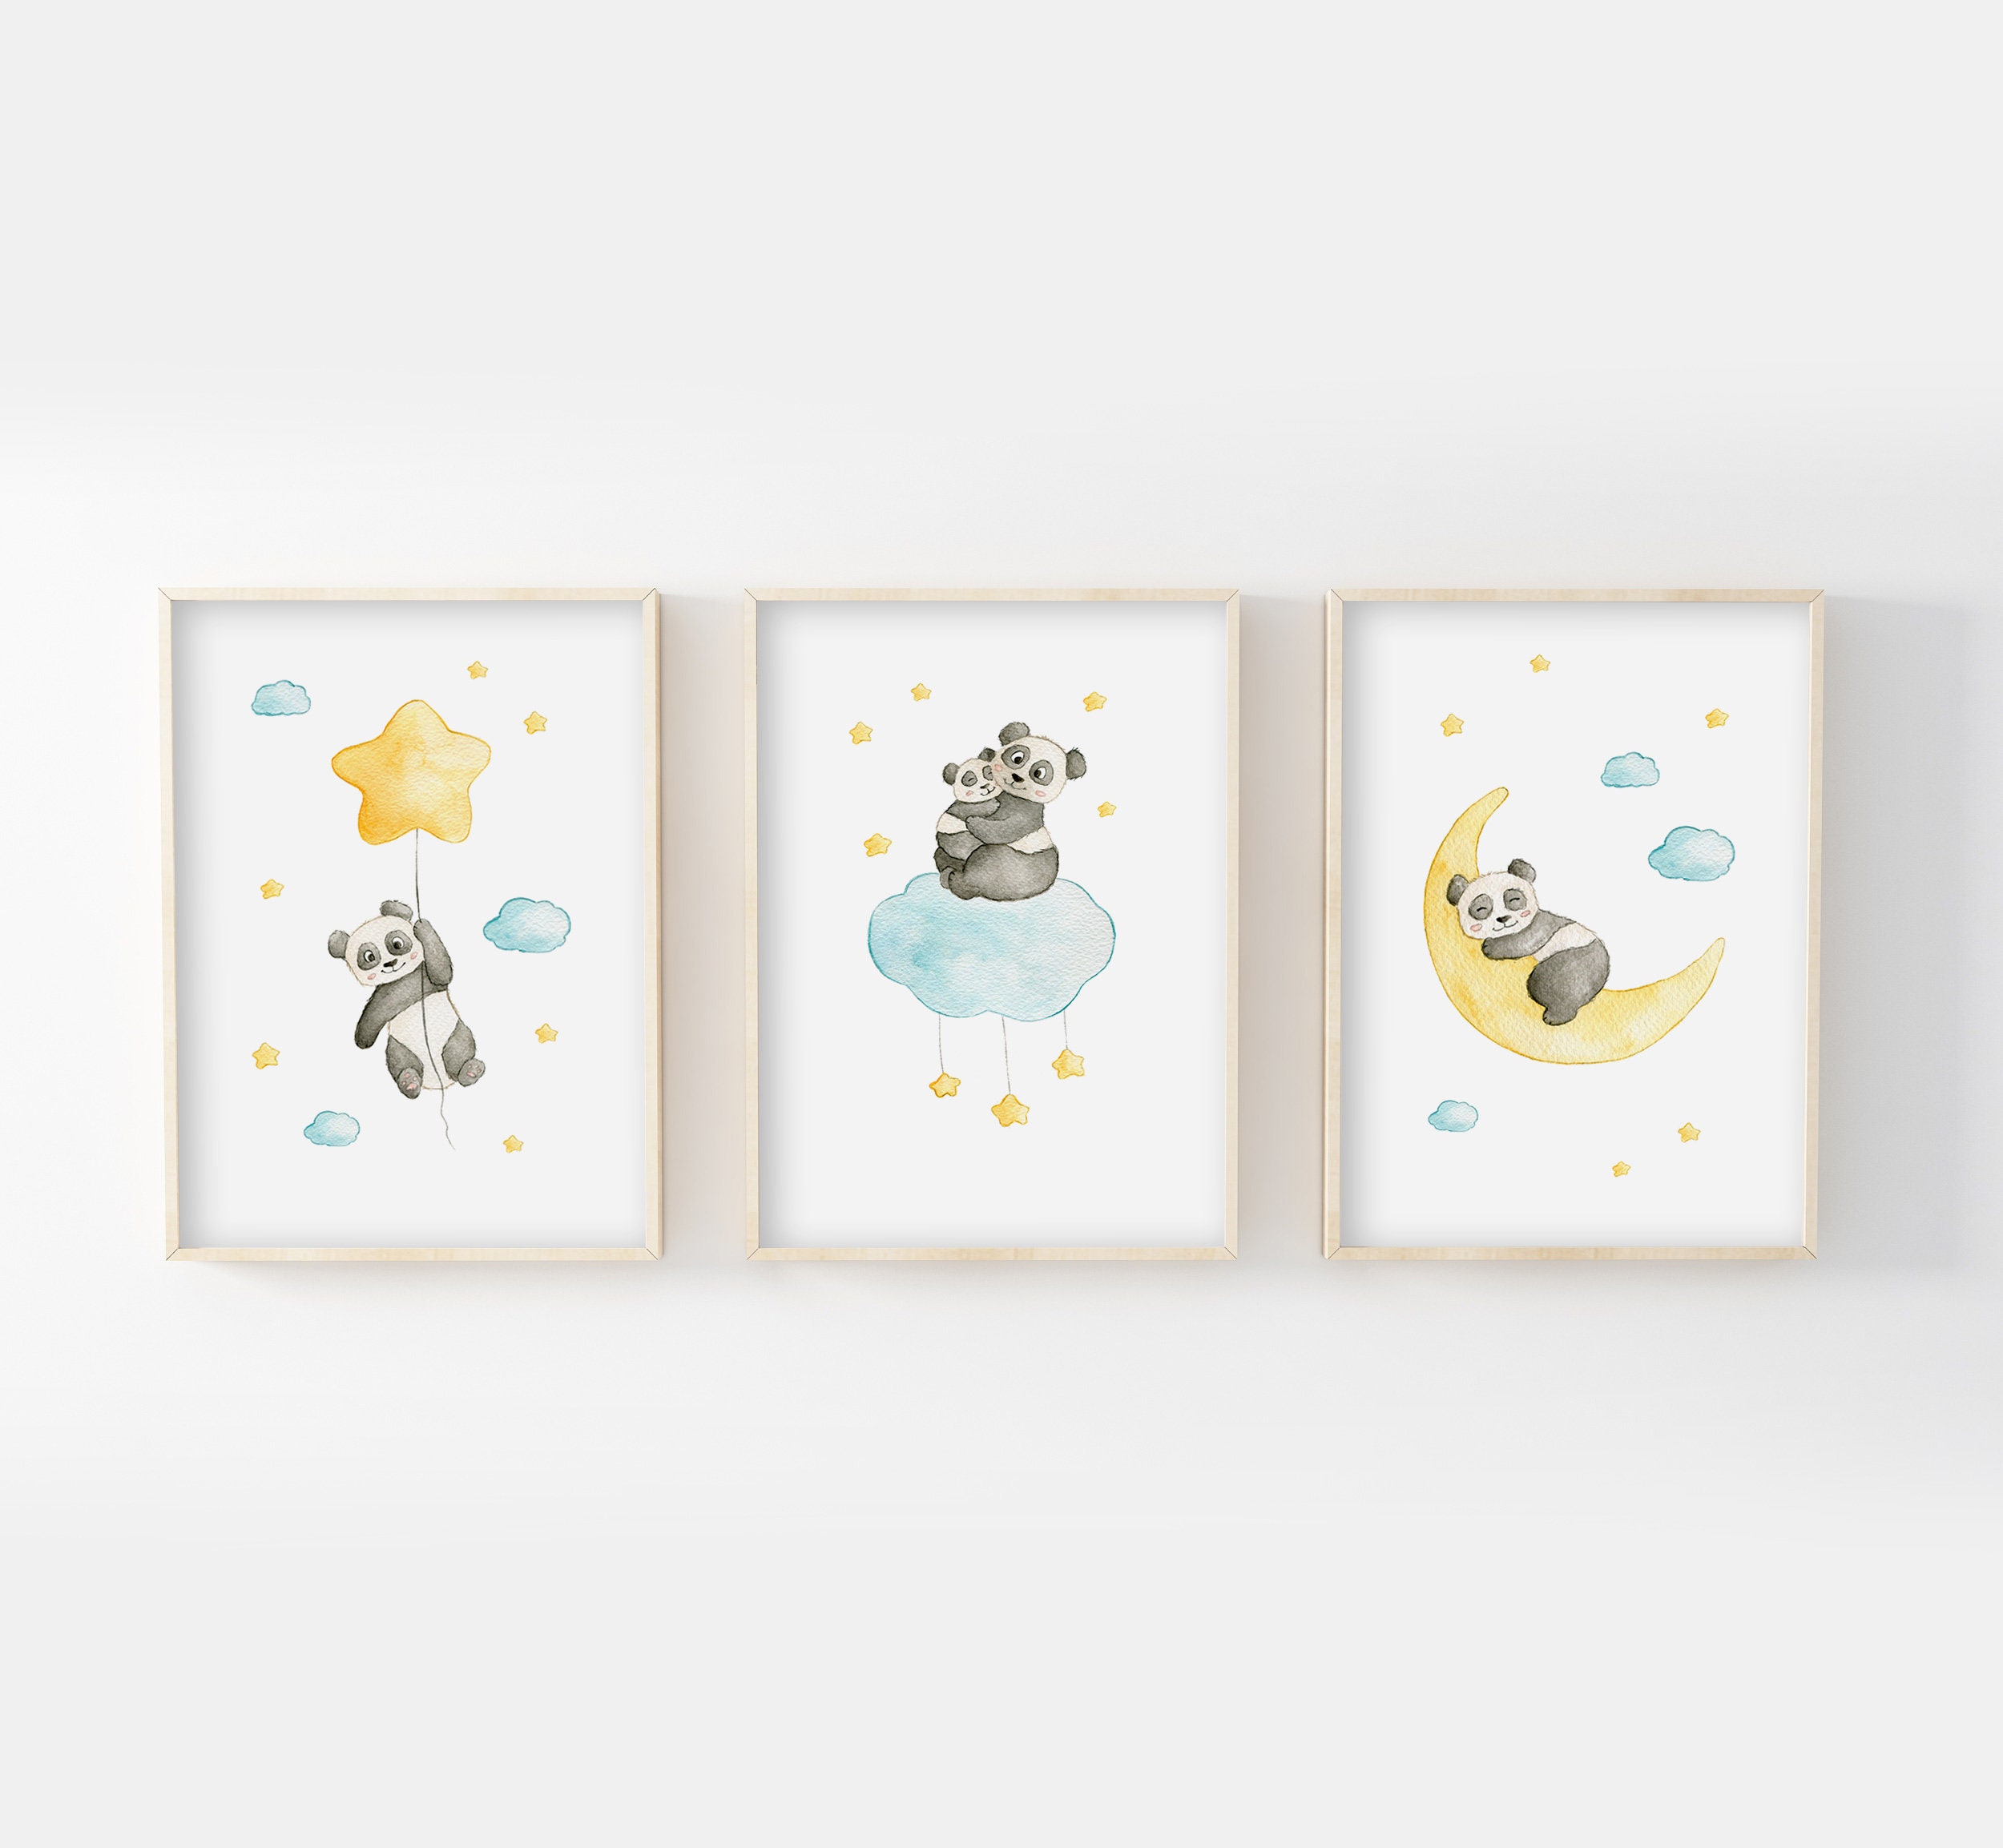 Affiches Bébé 30x40cm, Aquarelles Panda Dans Les Étoiles, Idée Cadeau Naissance, Anniversaire, Décor